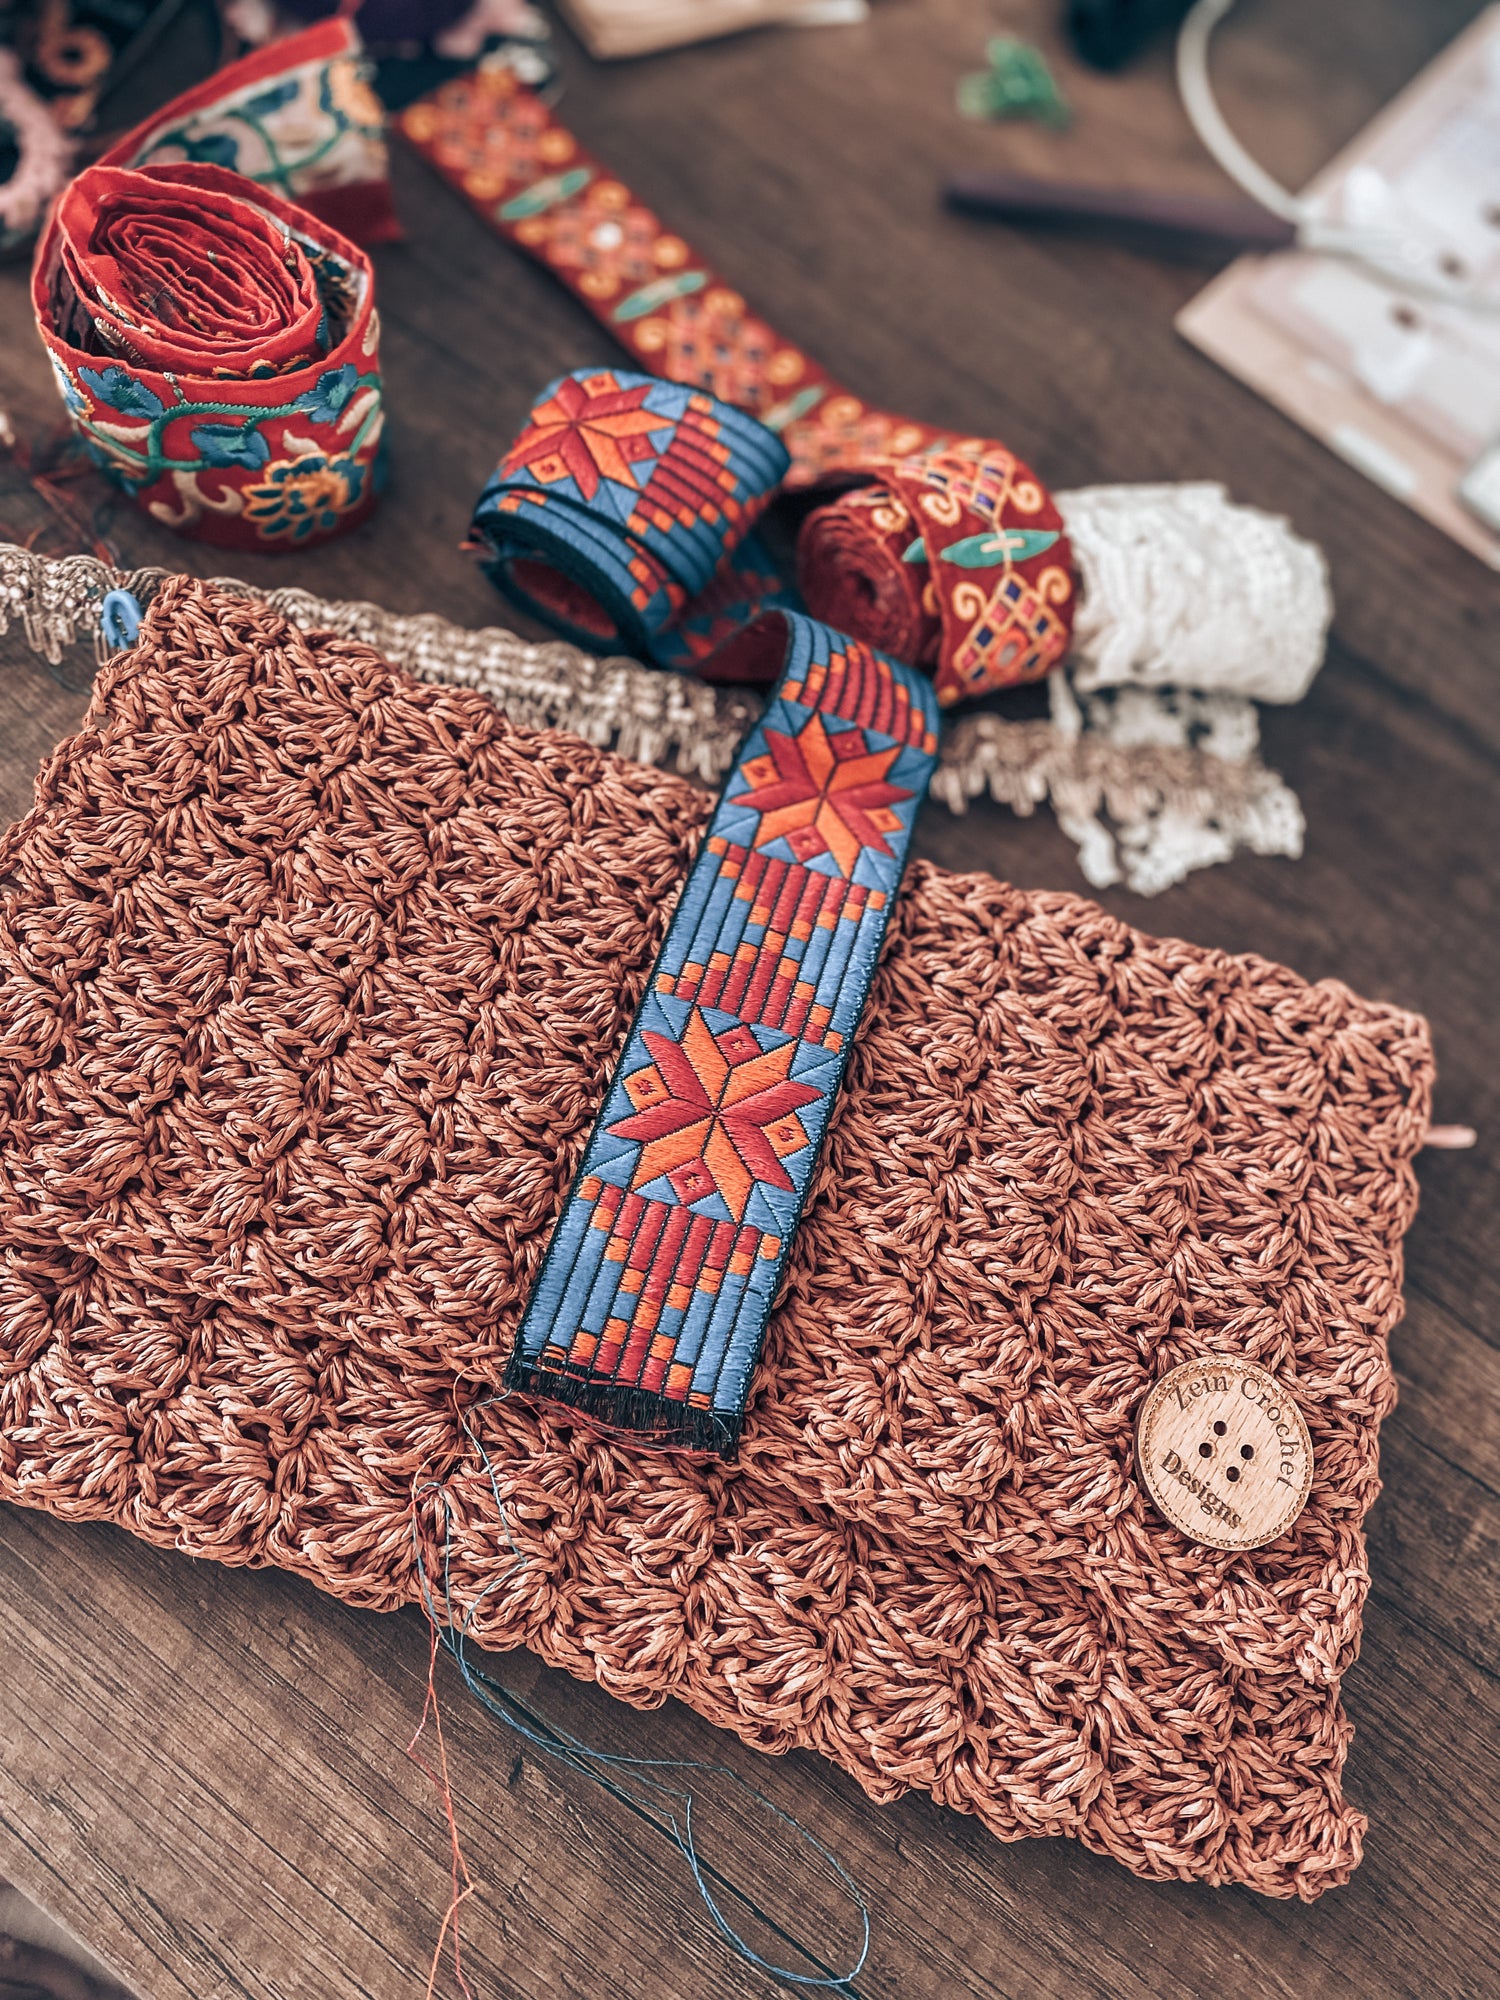 Handmade crochet summer clutch designed by Zein Crochet Designs